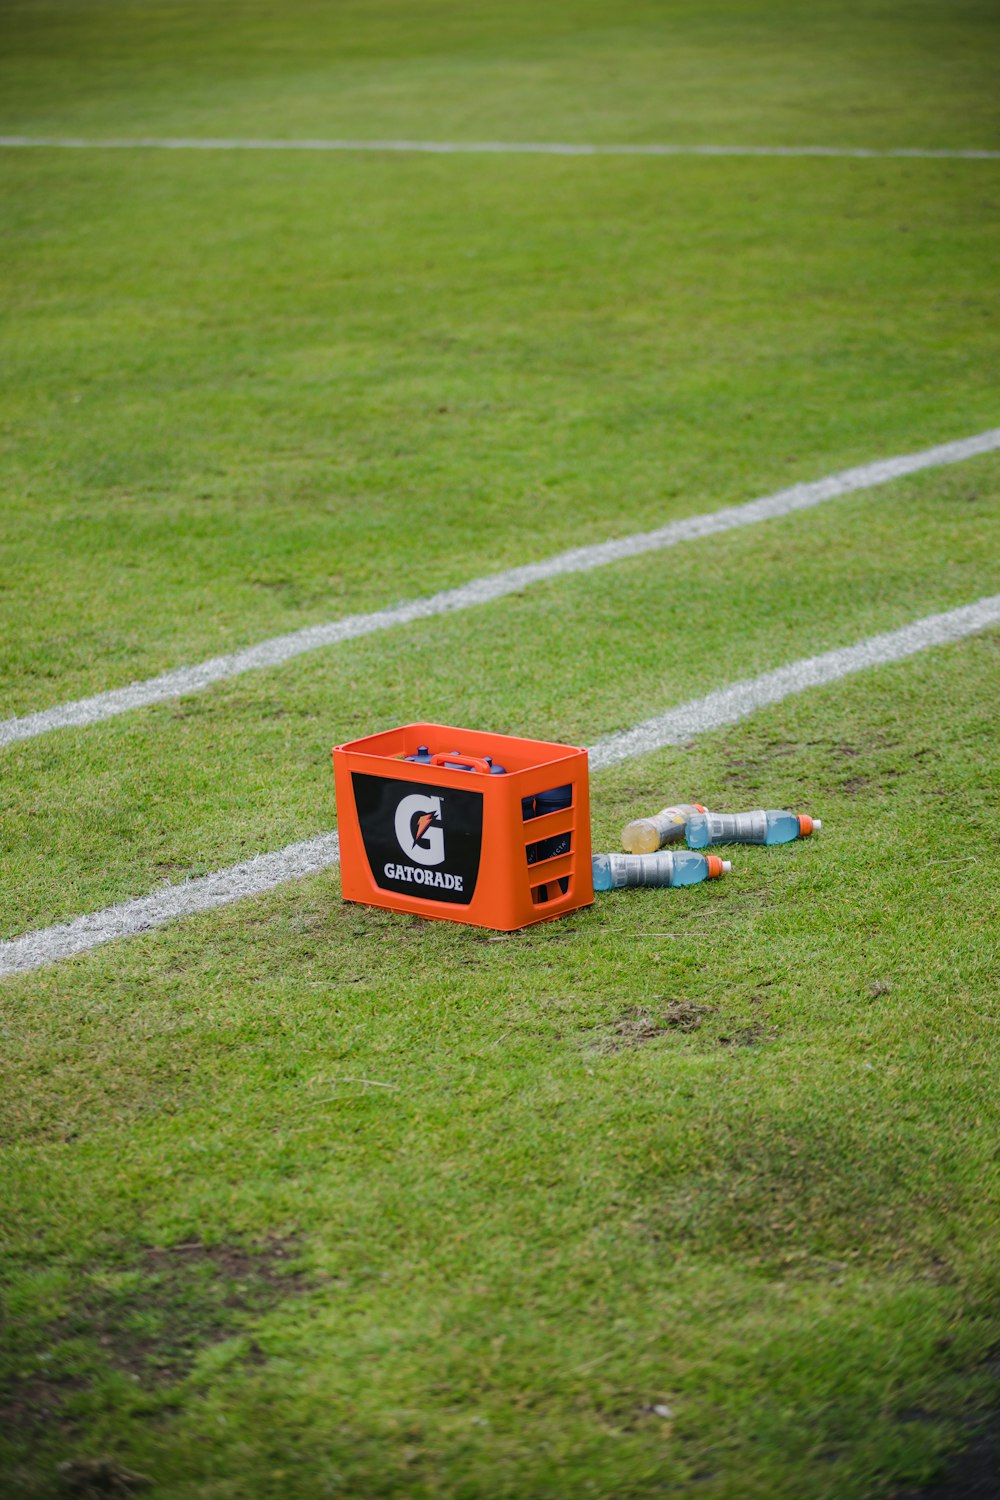 축구장 위에 앉아 있는 주황색 상자